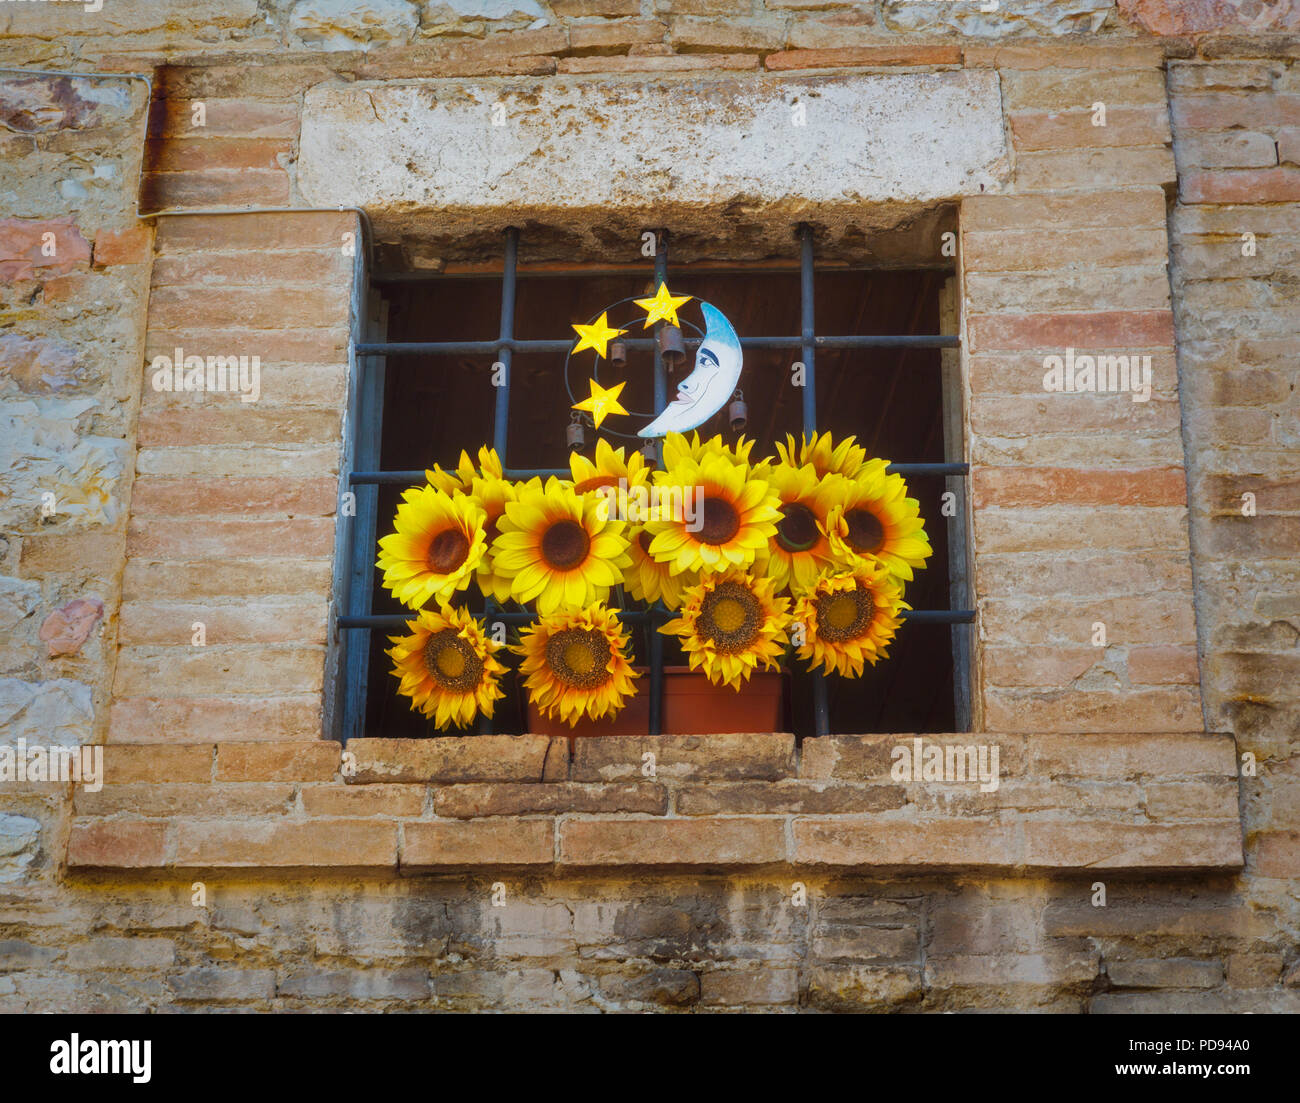 Assisi, la provincia di Perugia, Umbria, Italia. Una antica finestra sbarrata decorate con girasoli e un piccolo impianto che rappresenta la luna e le stelle. Foto Stock